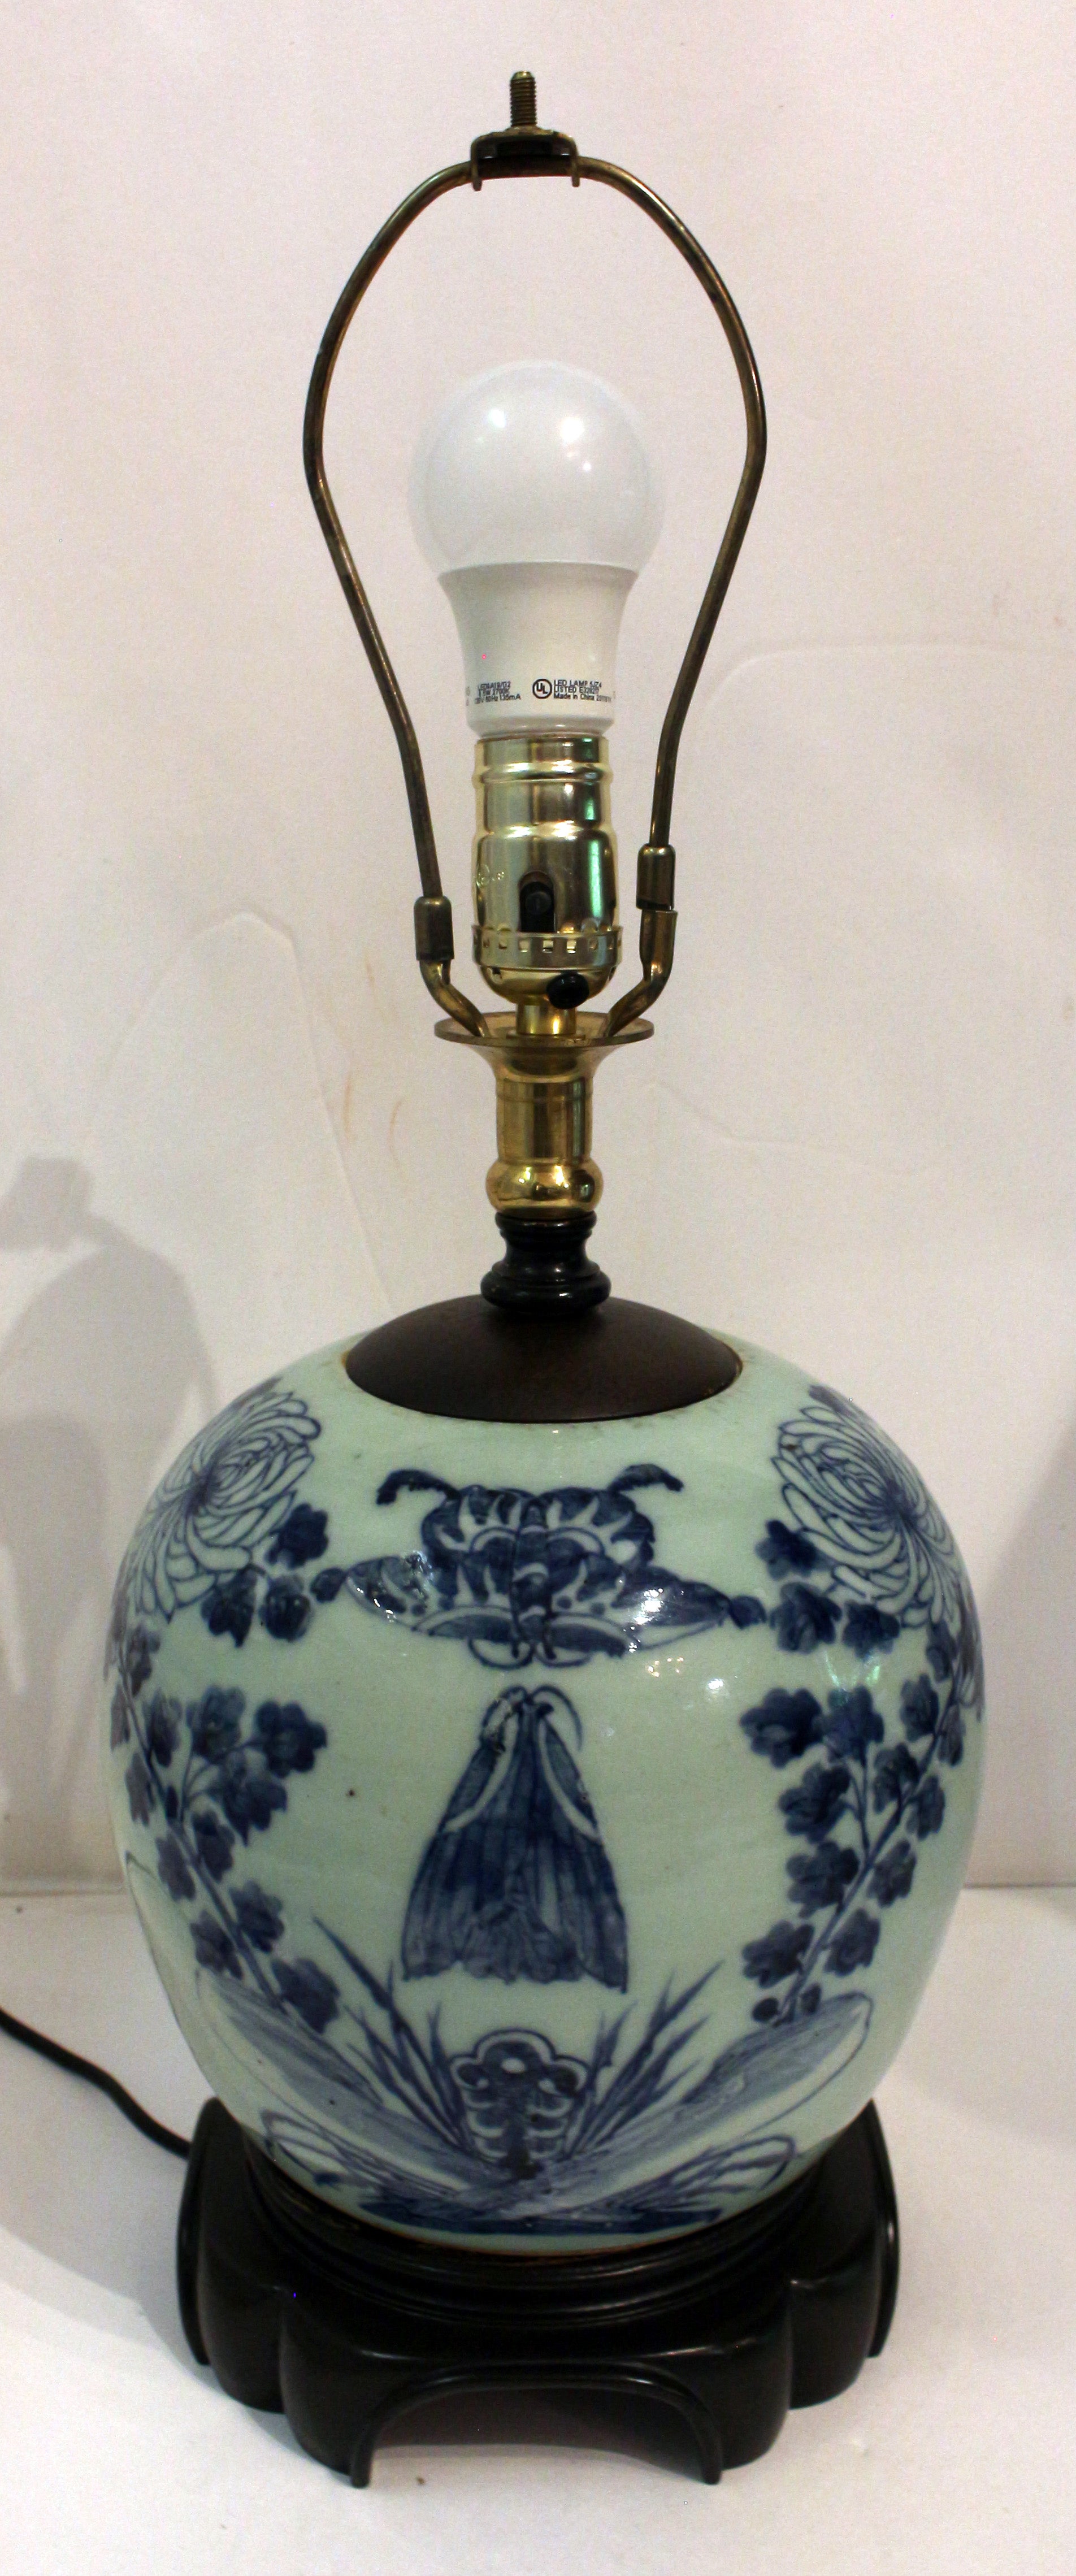 Chinesisches Ingwerglas aus dem späten 19. Jahrhundert, jetzt als Lampe montiert